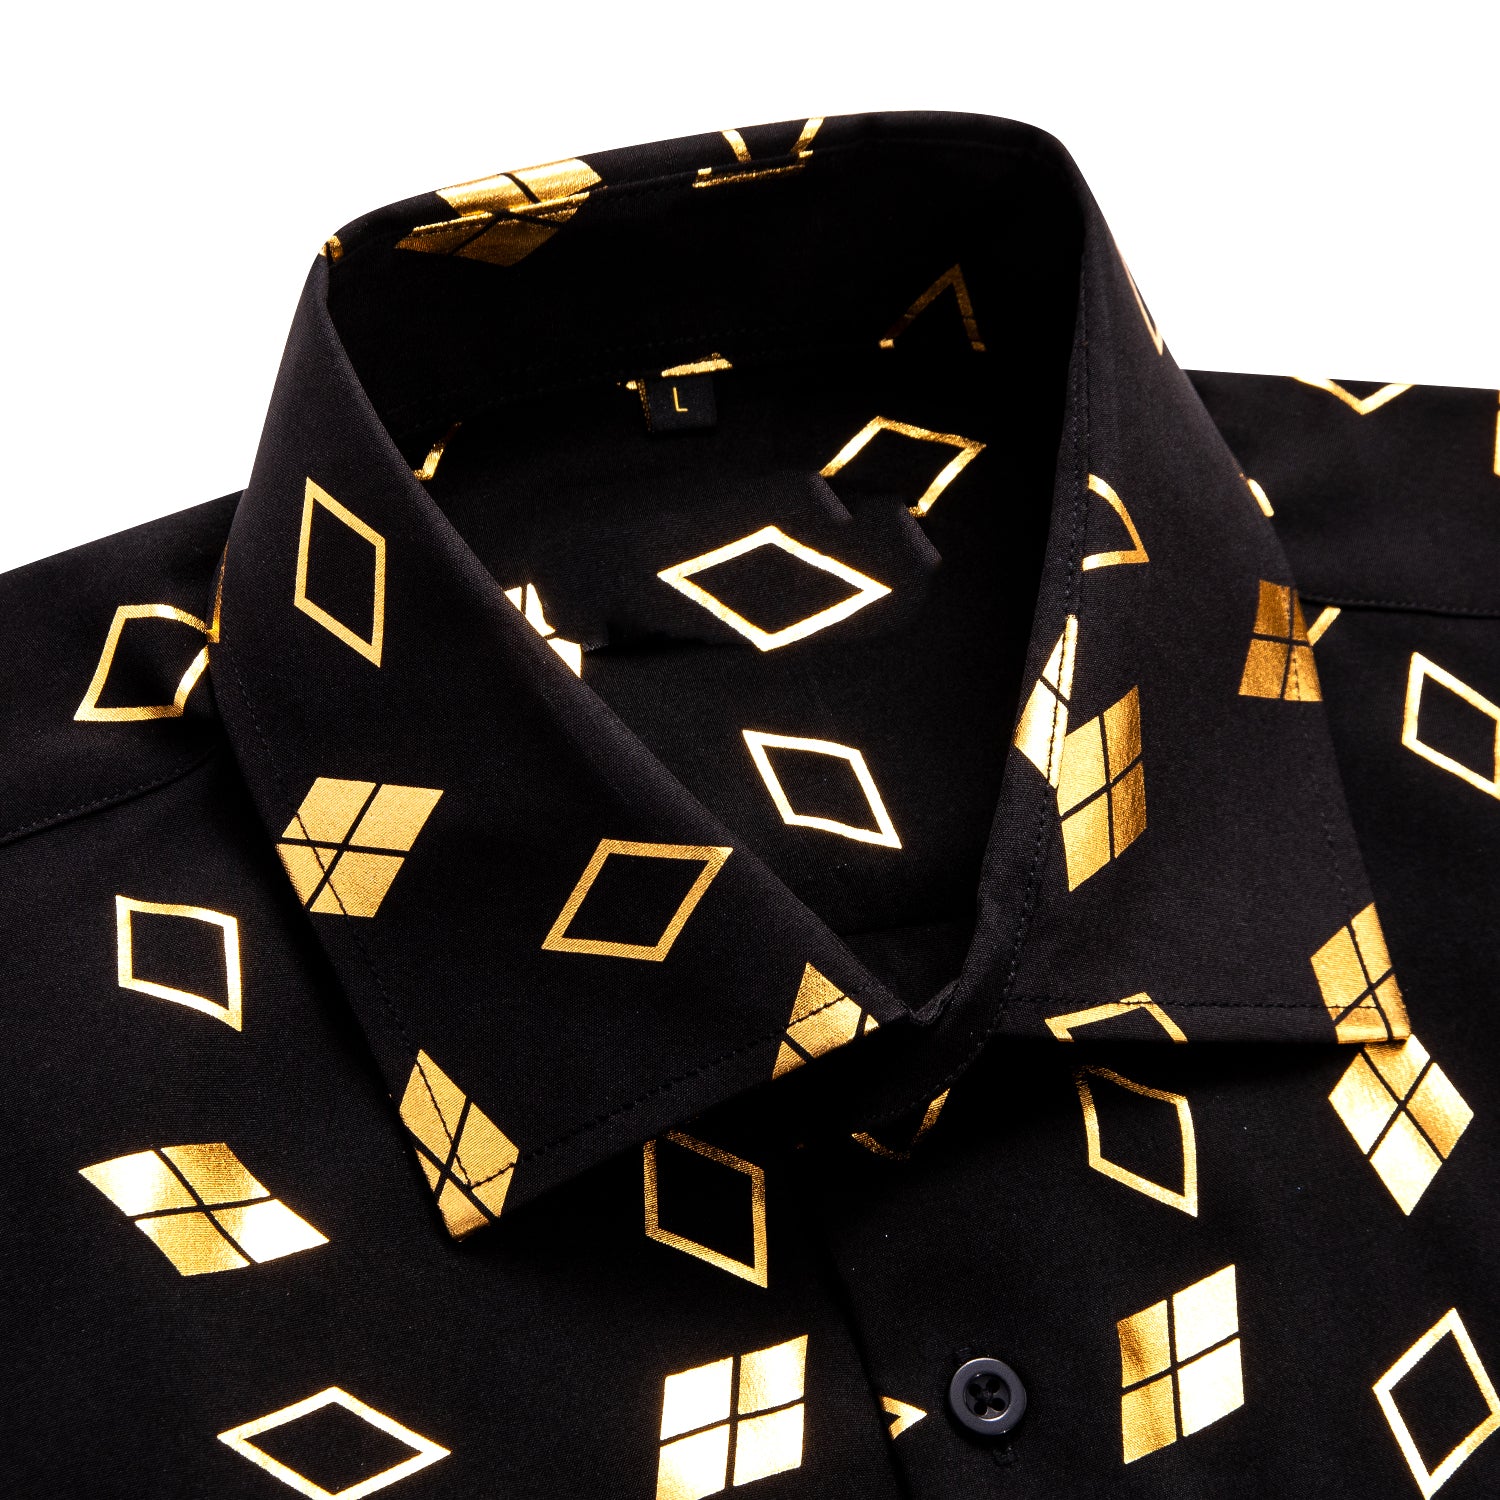 New Black Golden Square Men's Short Sleeve Shirt